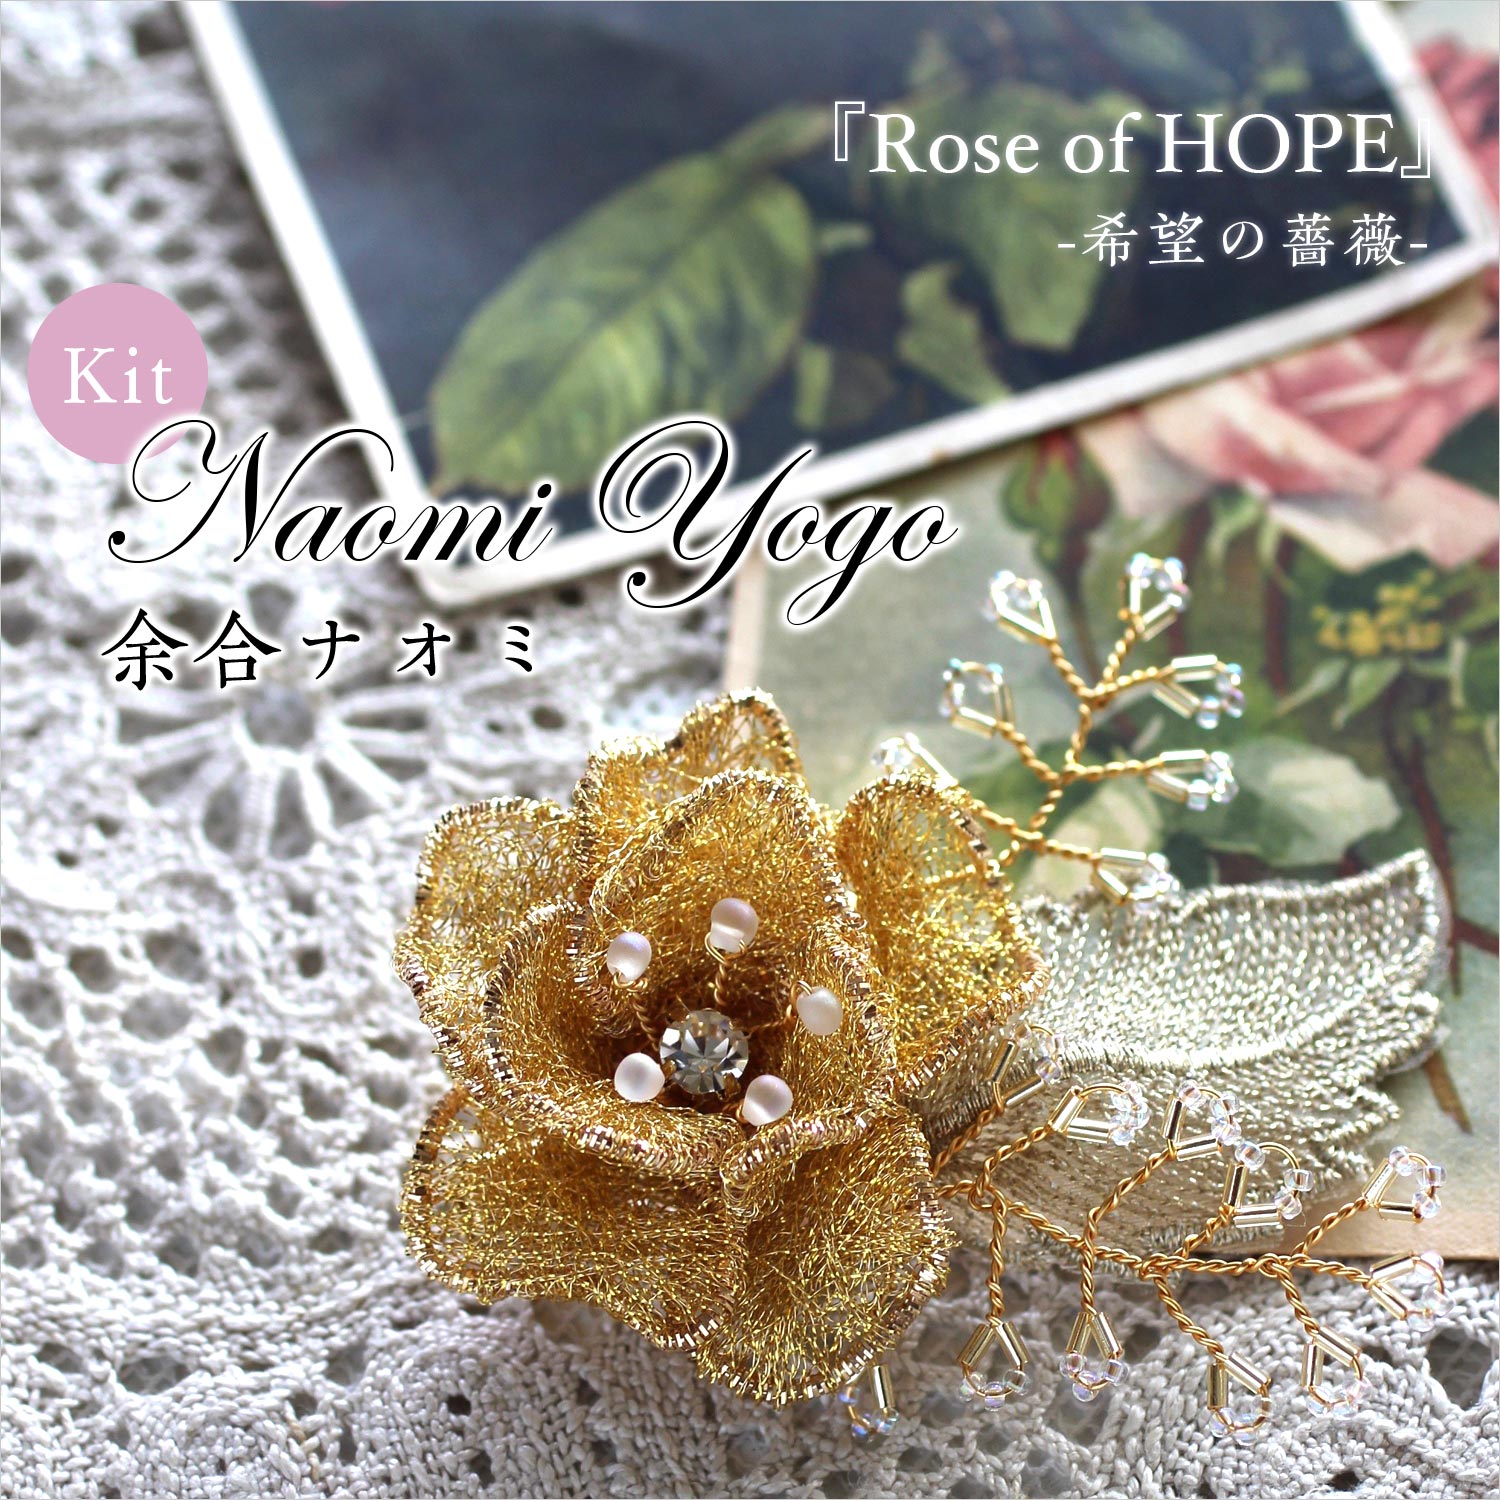 余合ナオミ先生デザイン「Rose of HOPE-希望の薔薇-」2wayブローチキット